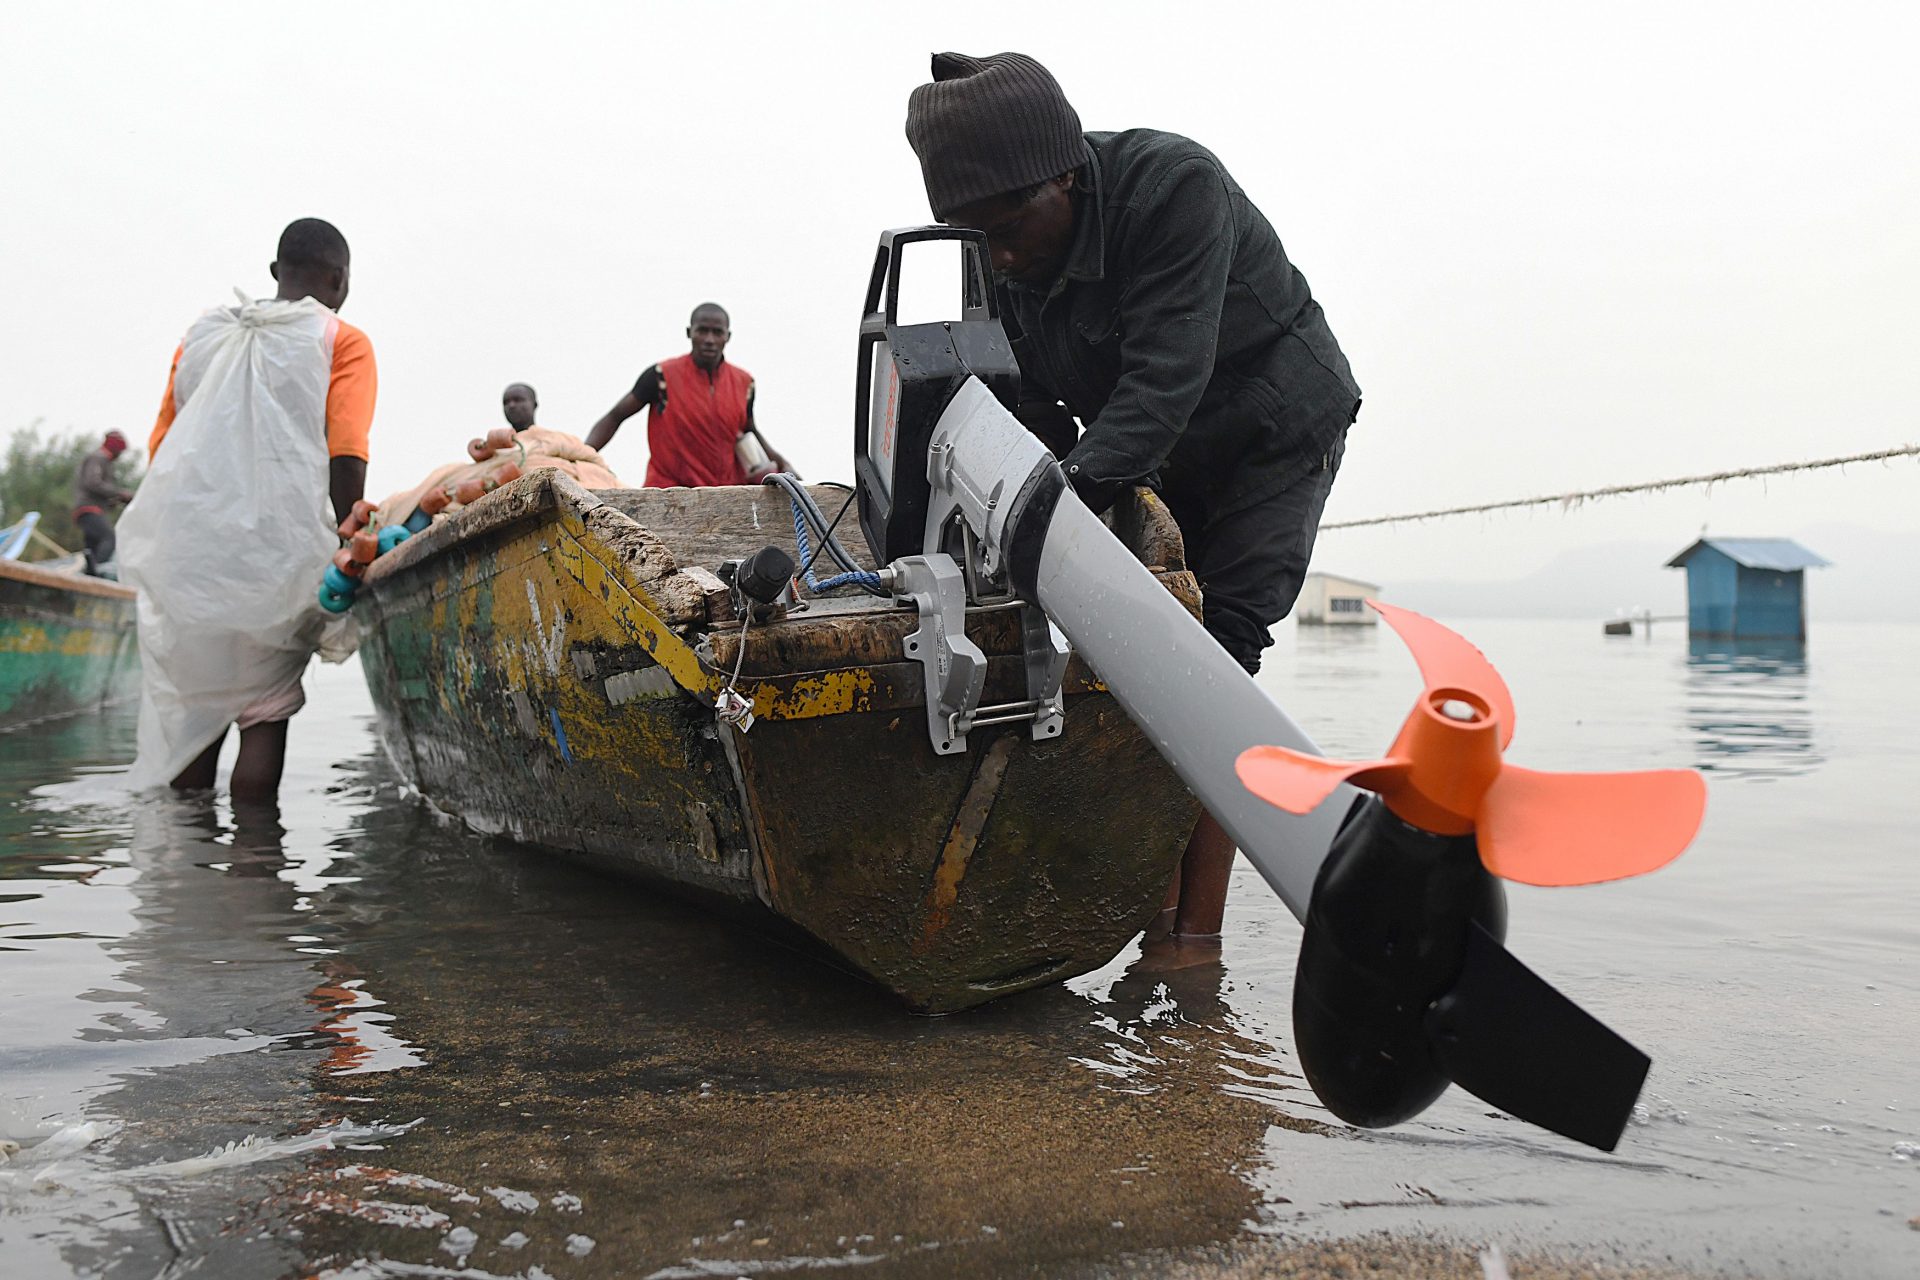 La rivoluzione dei piccoli pescatori del lago Vittoria che usano barche elettriche